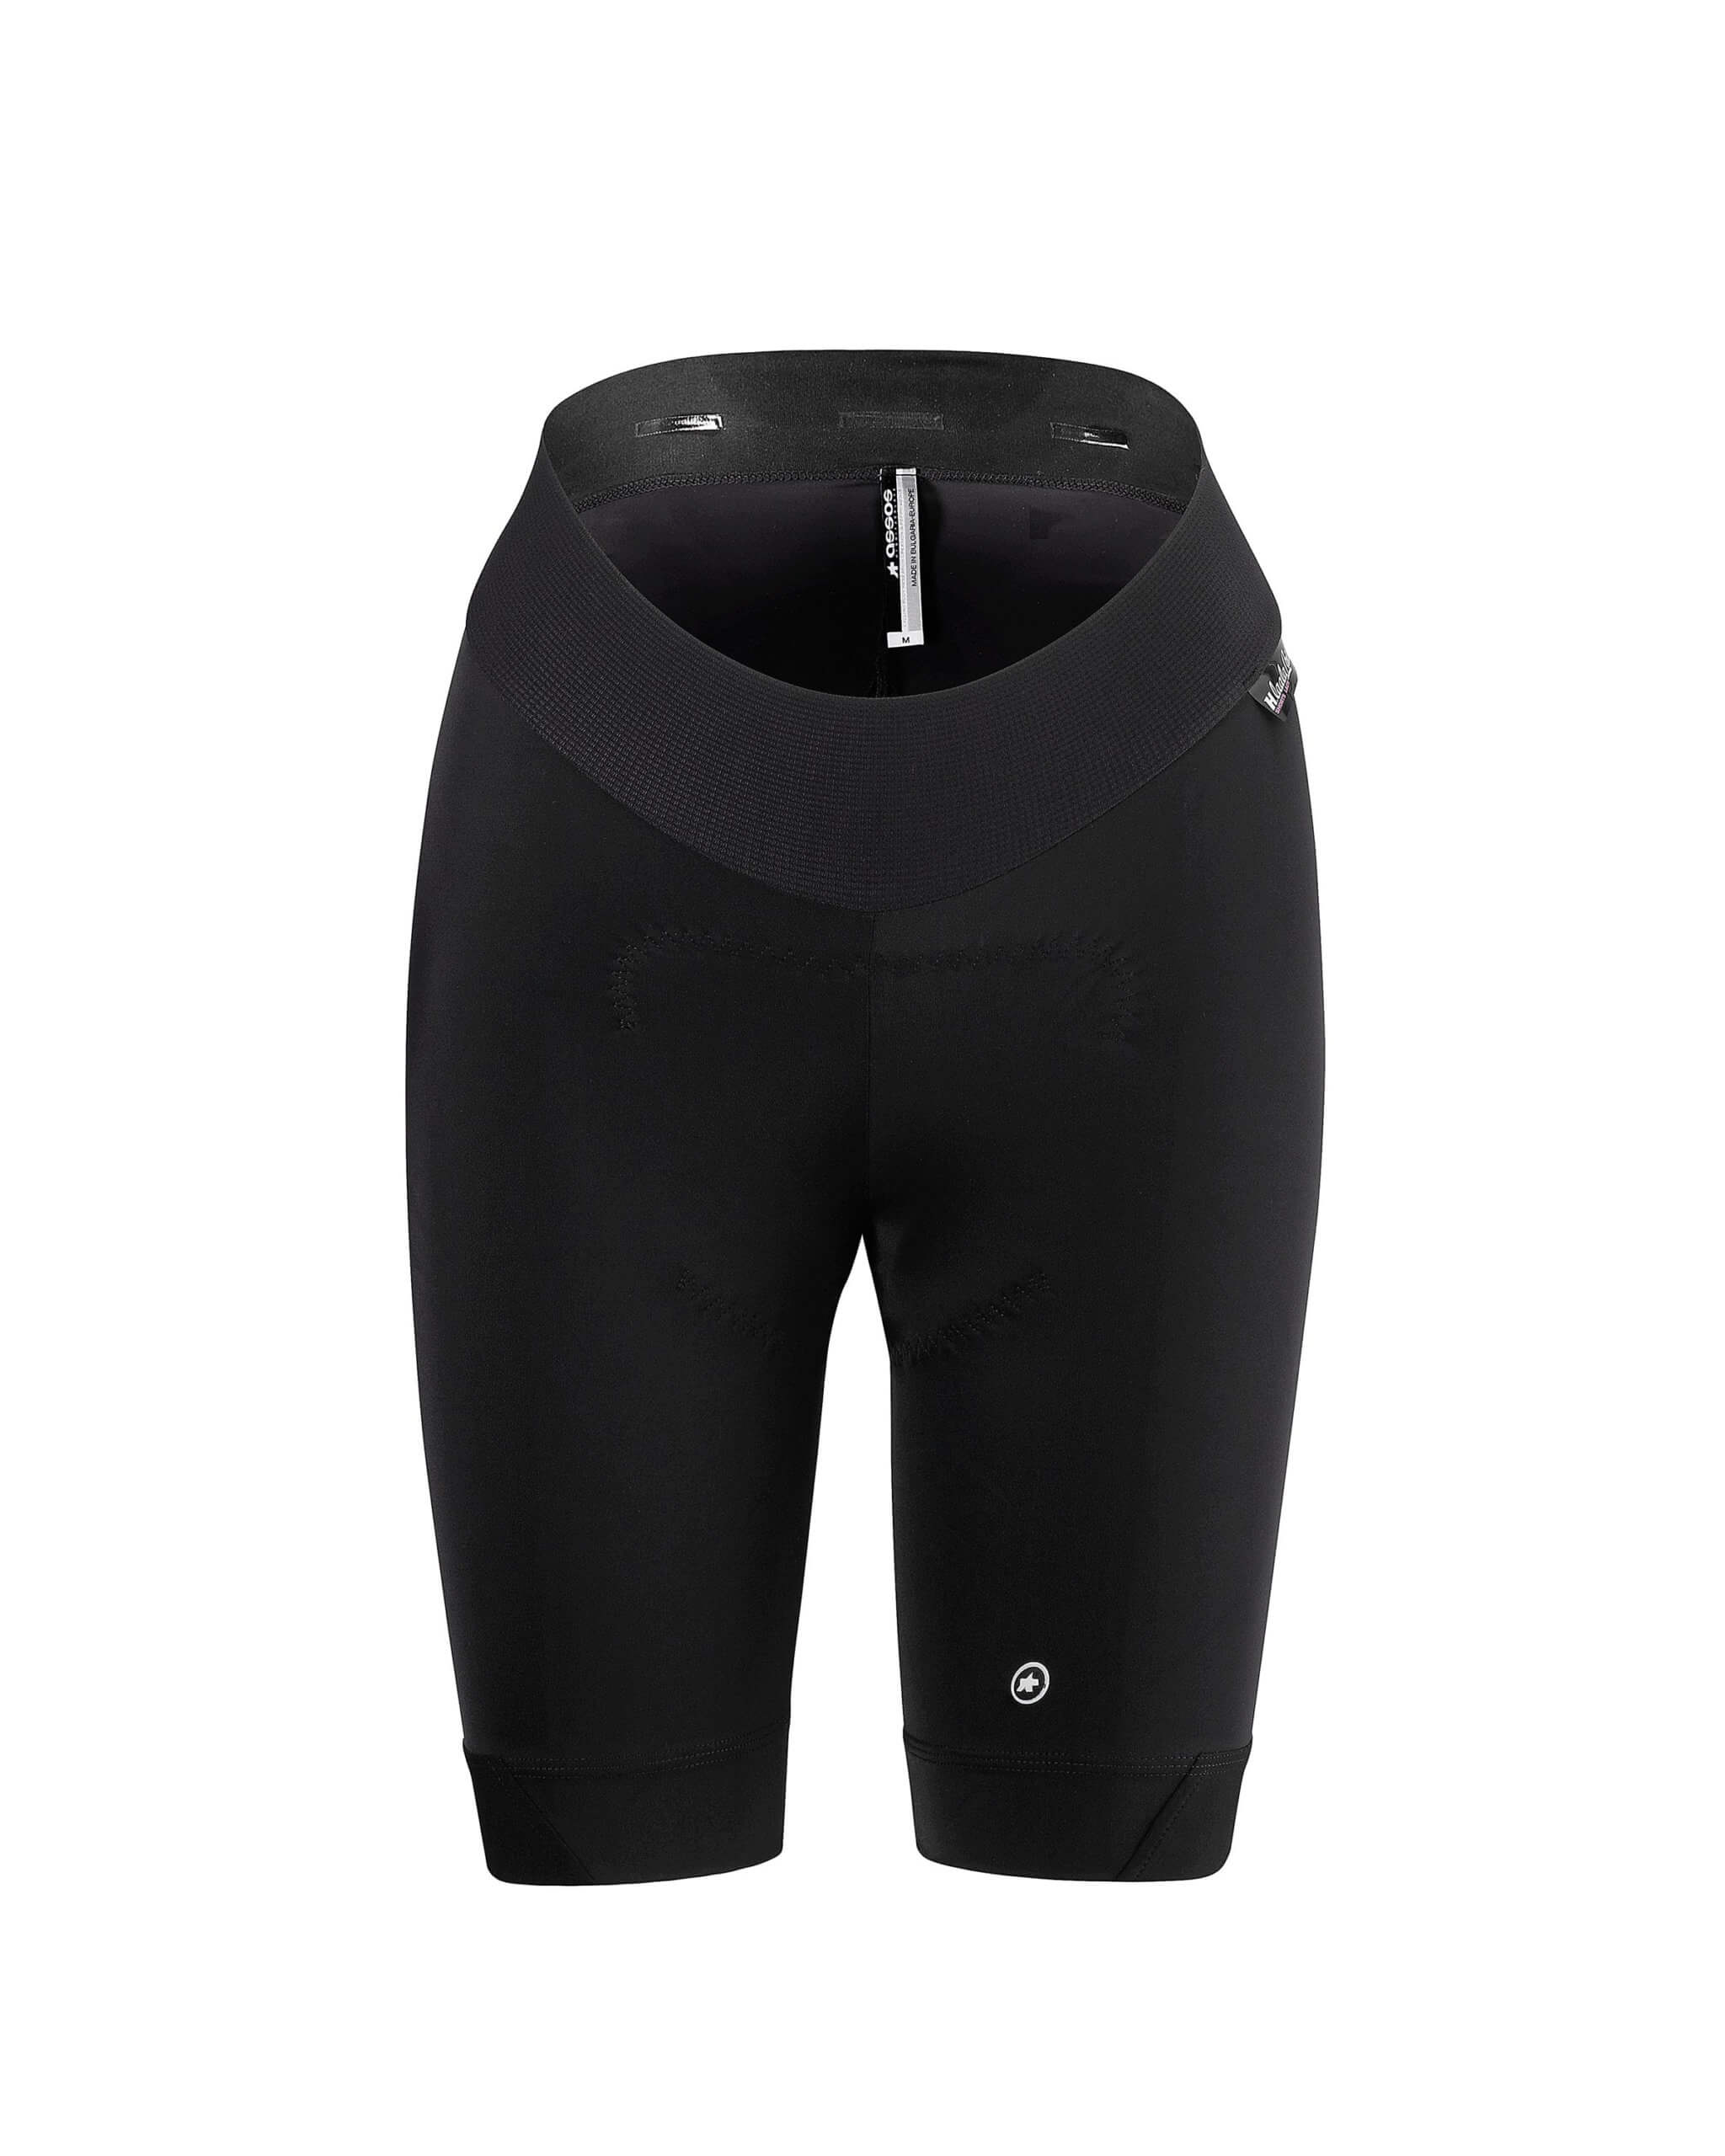 Велотрусы ASSOS H.Laalalai Shorts S7, женские, черные с белым логотипом, S фото 